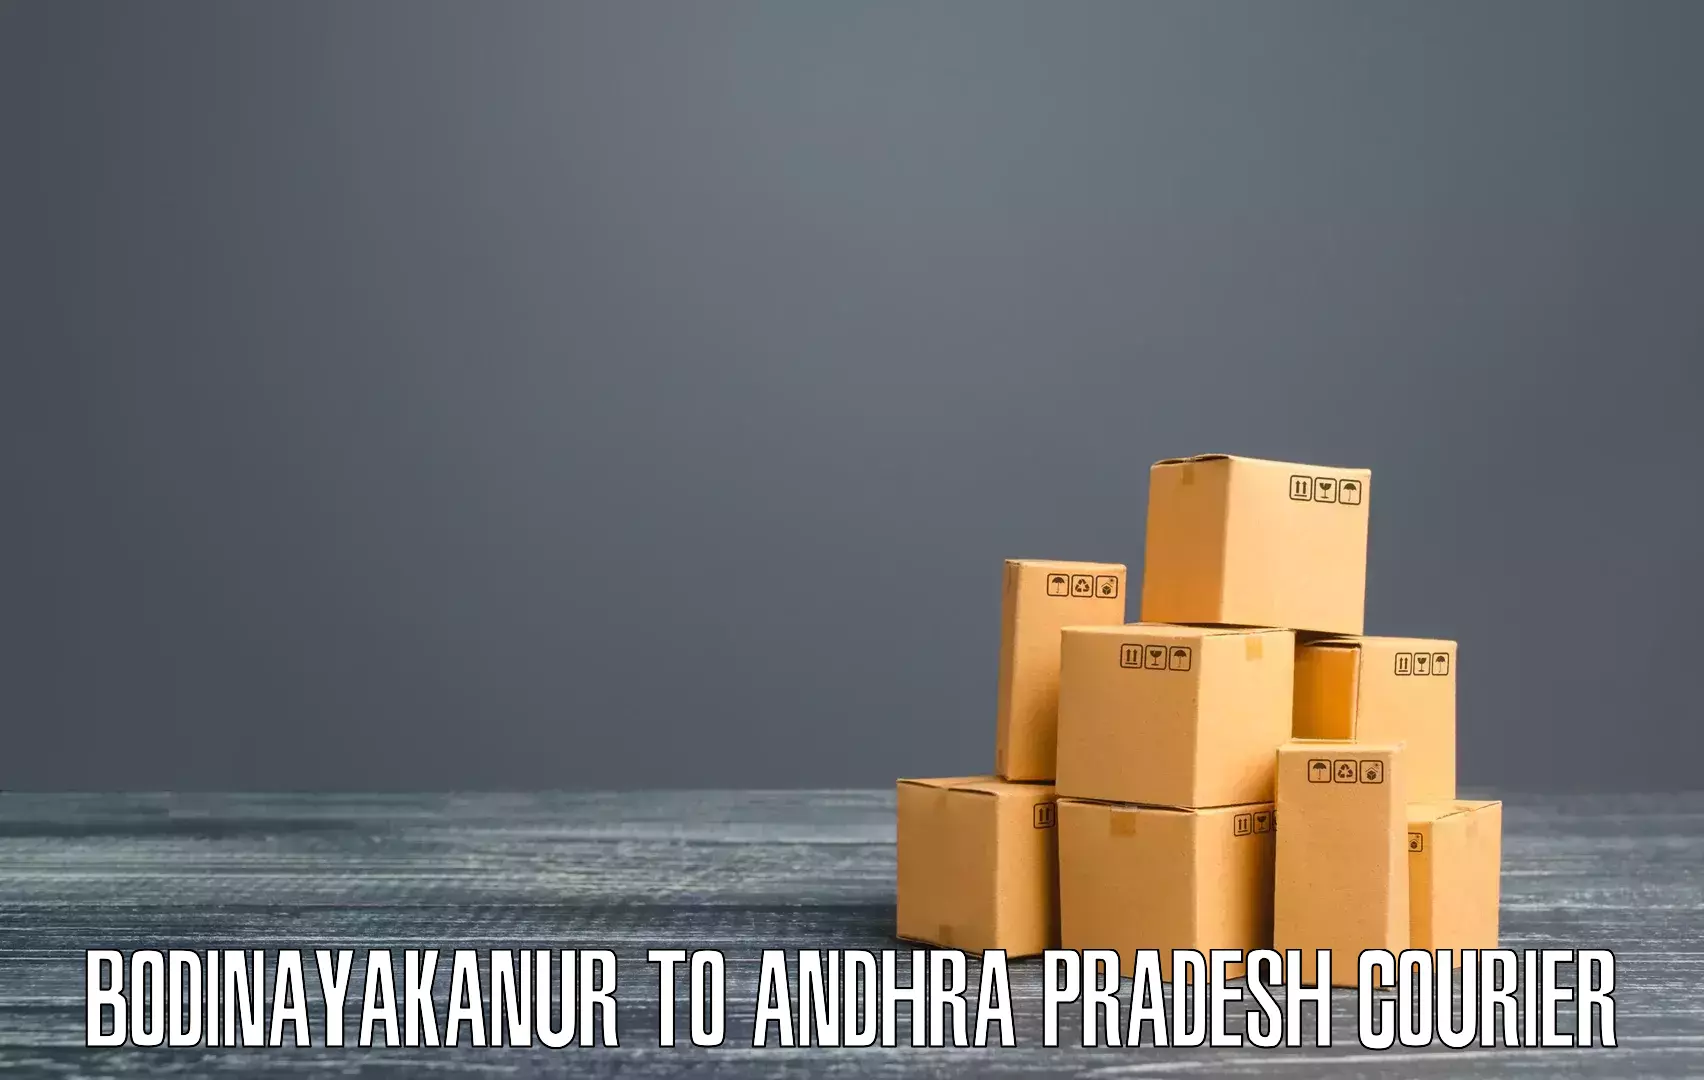 Package tracking Bodinayakanur to Machilipatnam